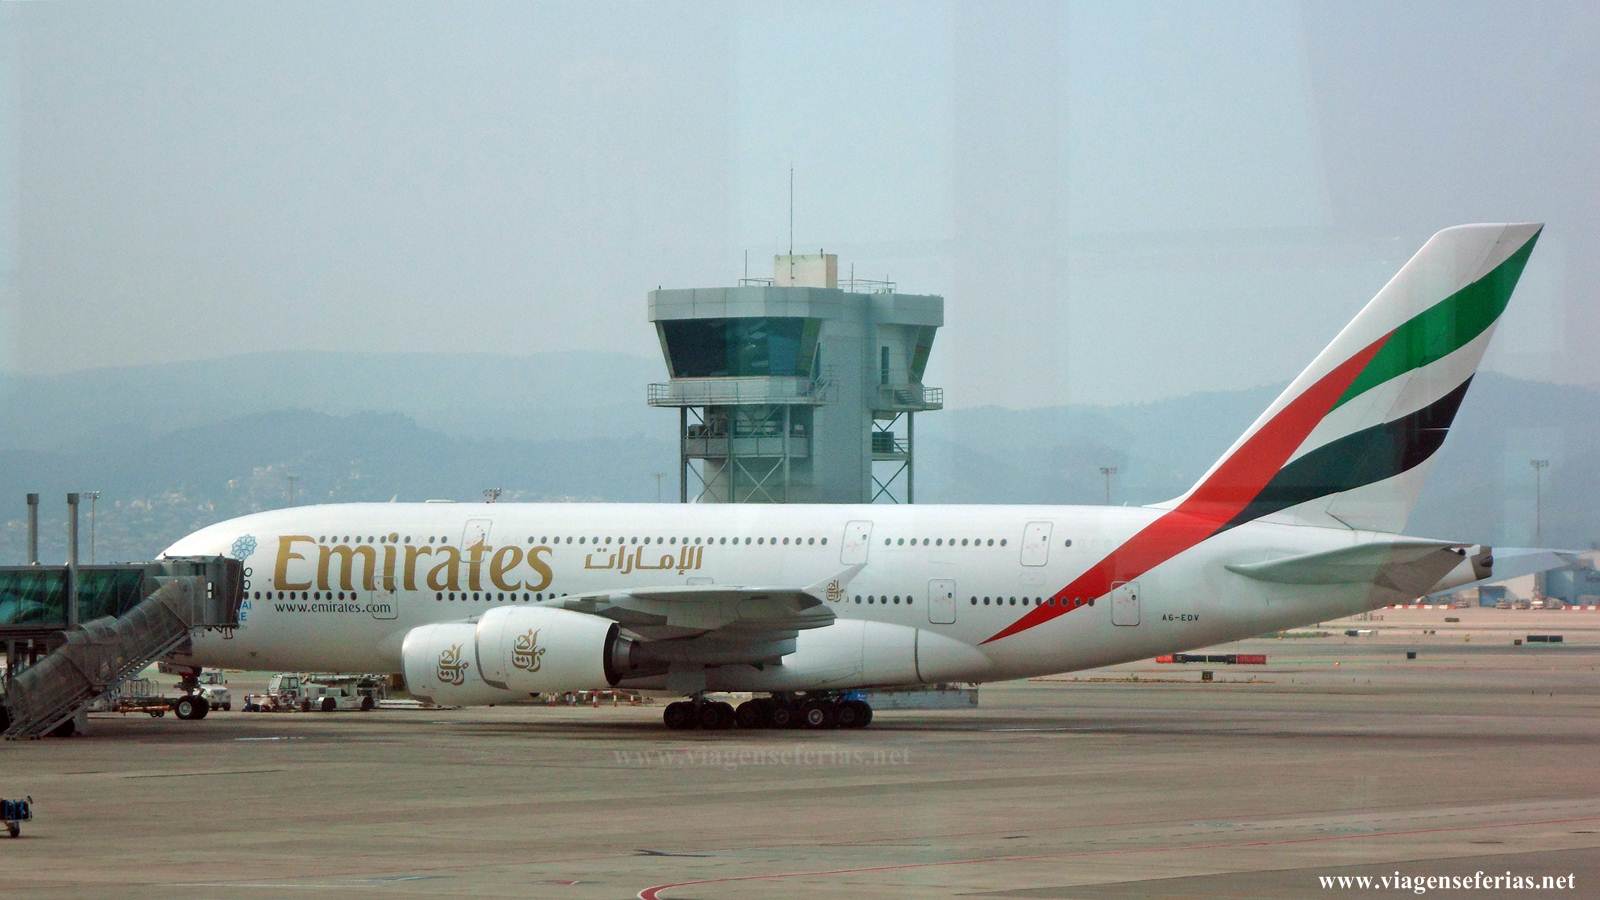 Emirates anunciou o serviço do Airbus A380 em Madrid e Dusseldorf